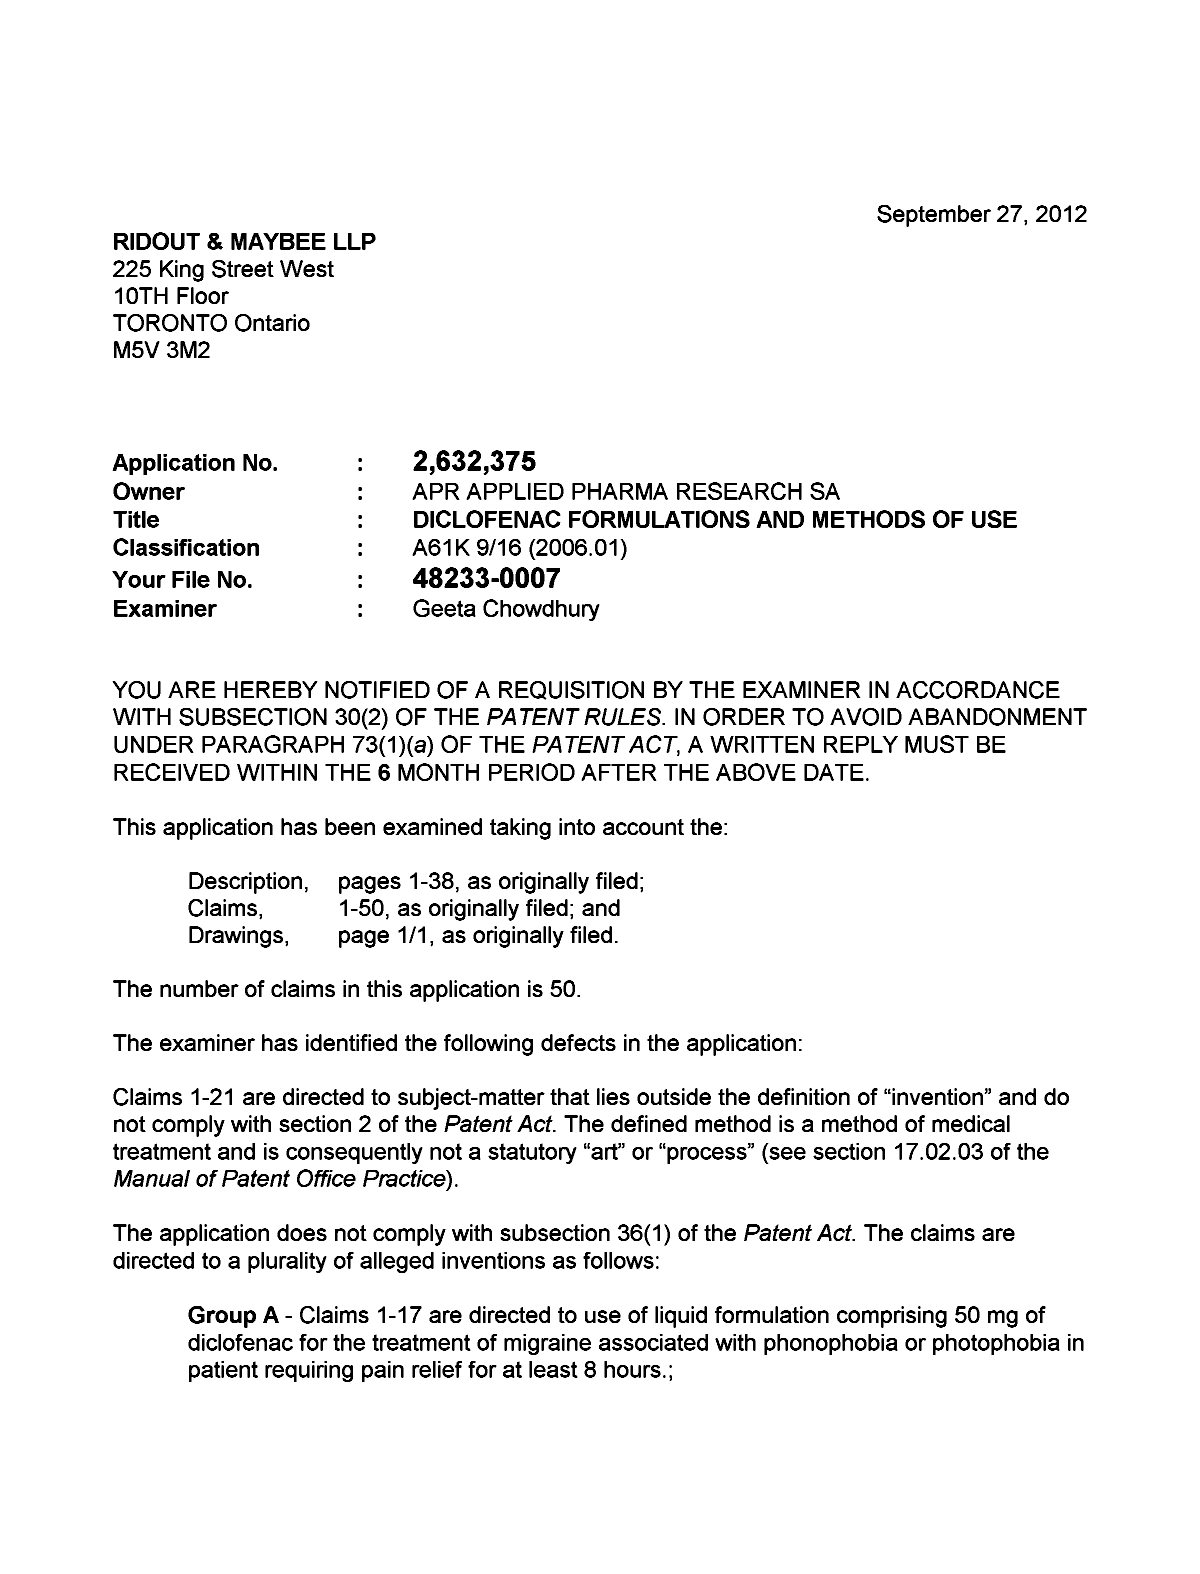 Document de brevet canadien 2632375. Poursuite-Amendment 20120927. Image 1 de 2